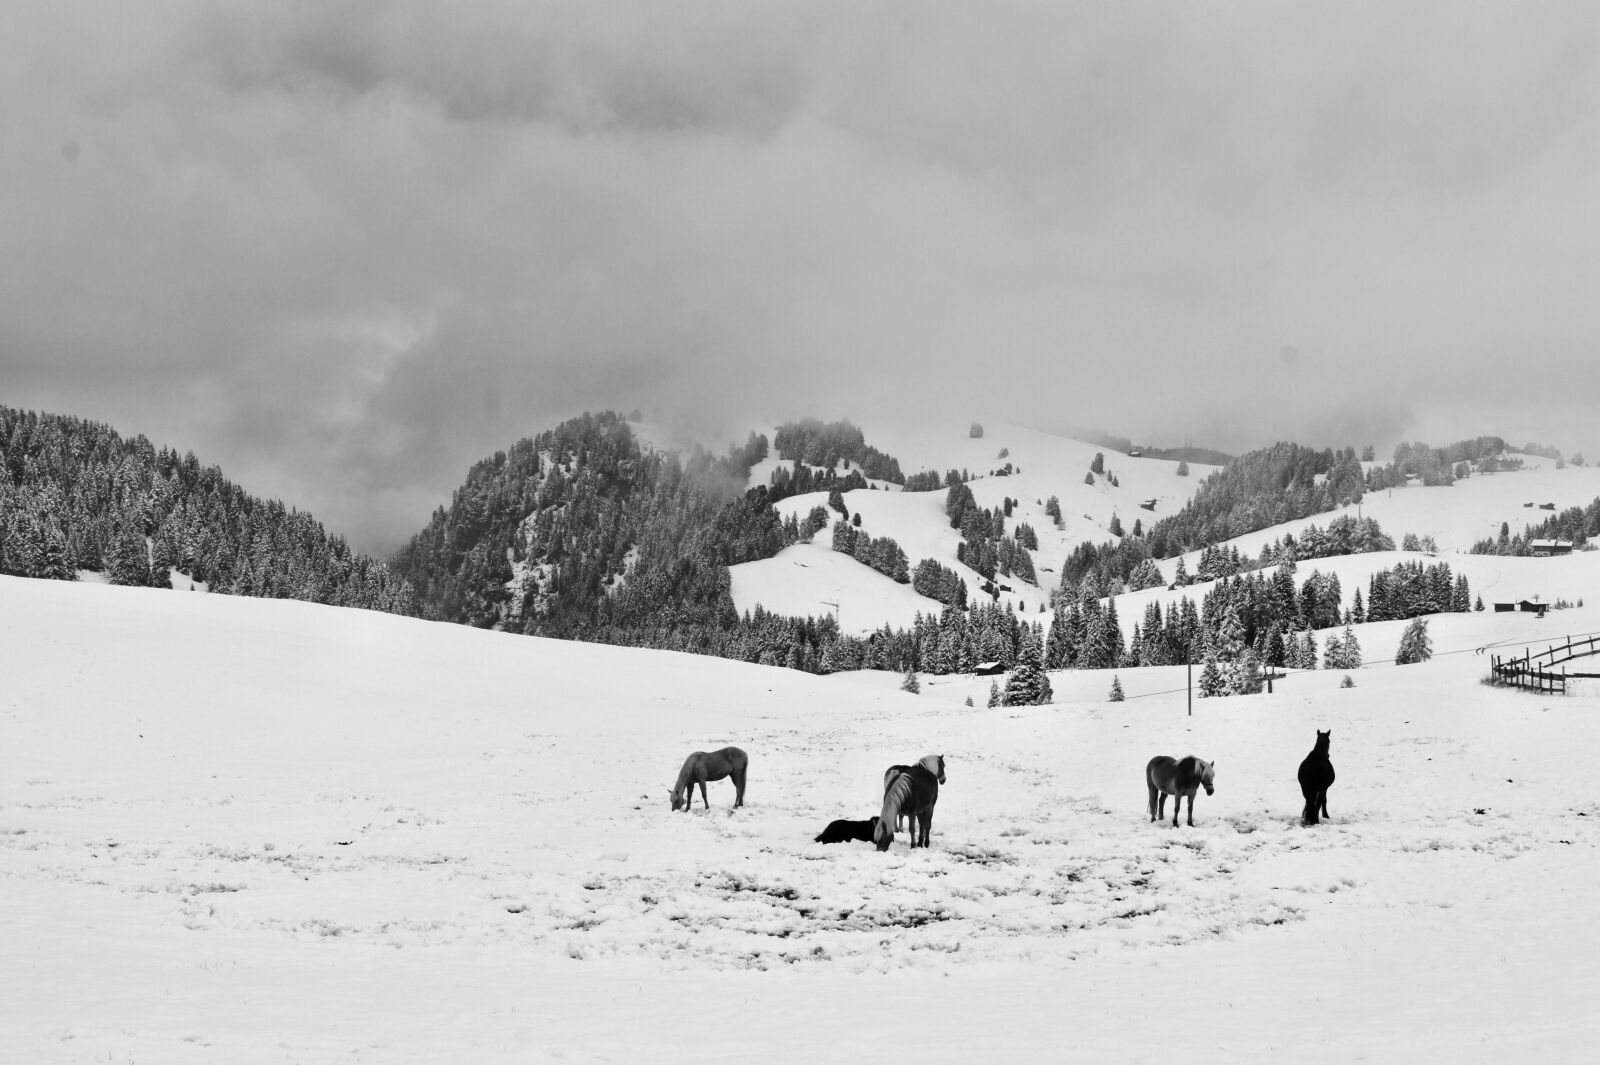 Sony Alpha DSLR-A550 sample photo. Alp siusi, snow, horses photography